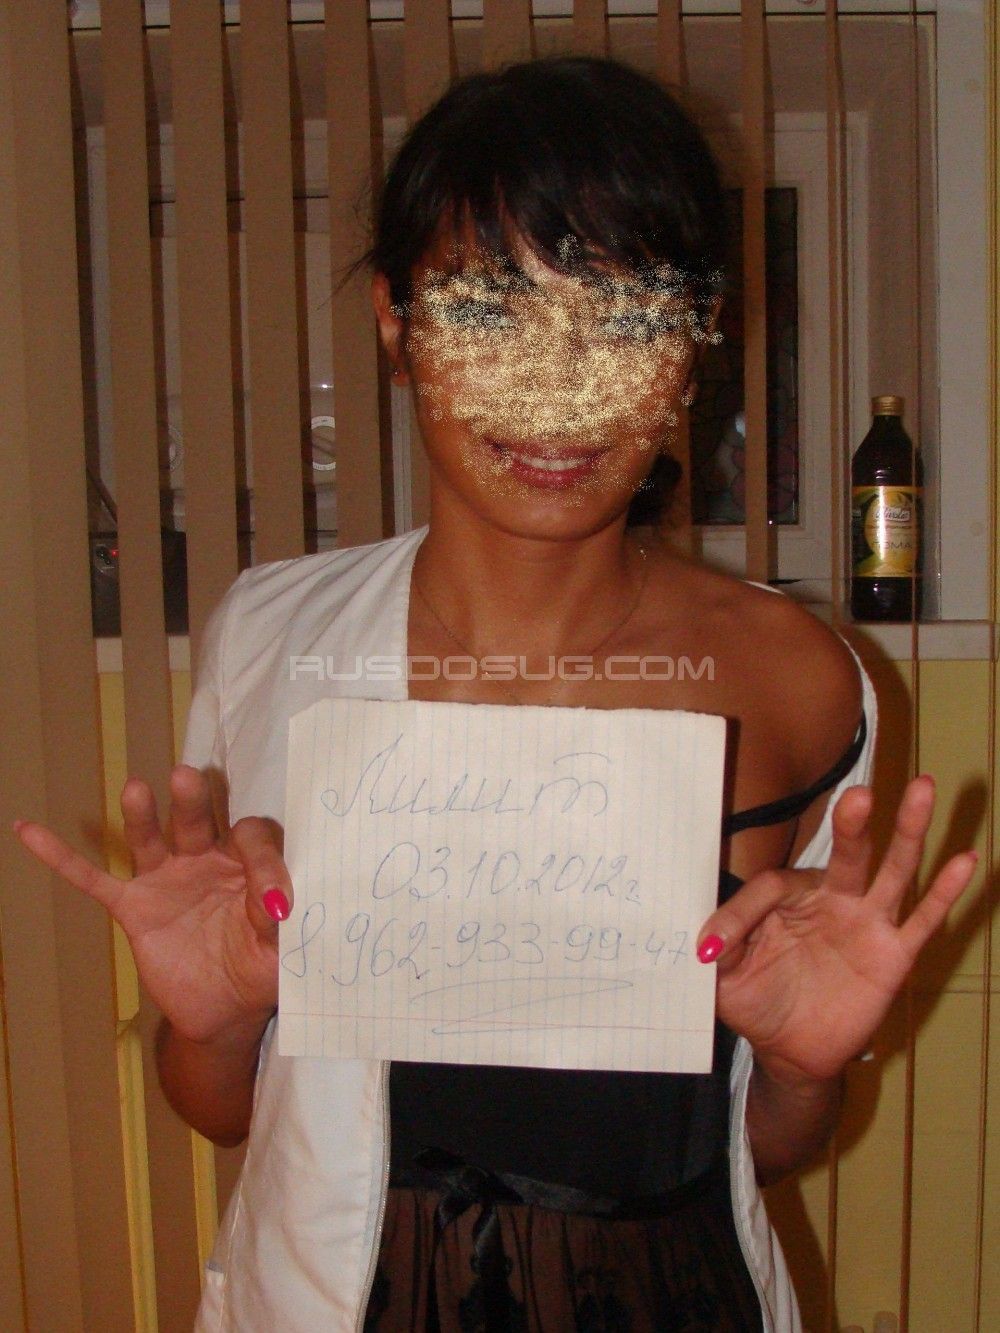 Проститутка Светлана с реальными фото в возрасте 25 лет